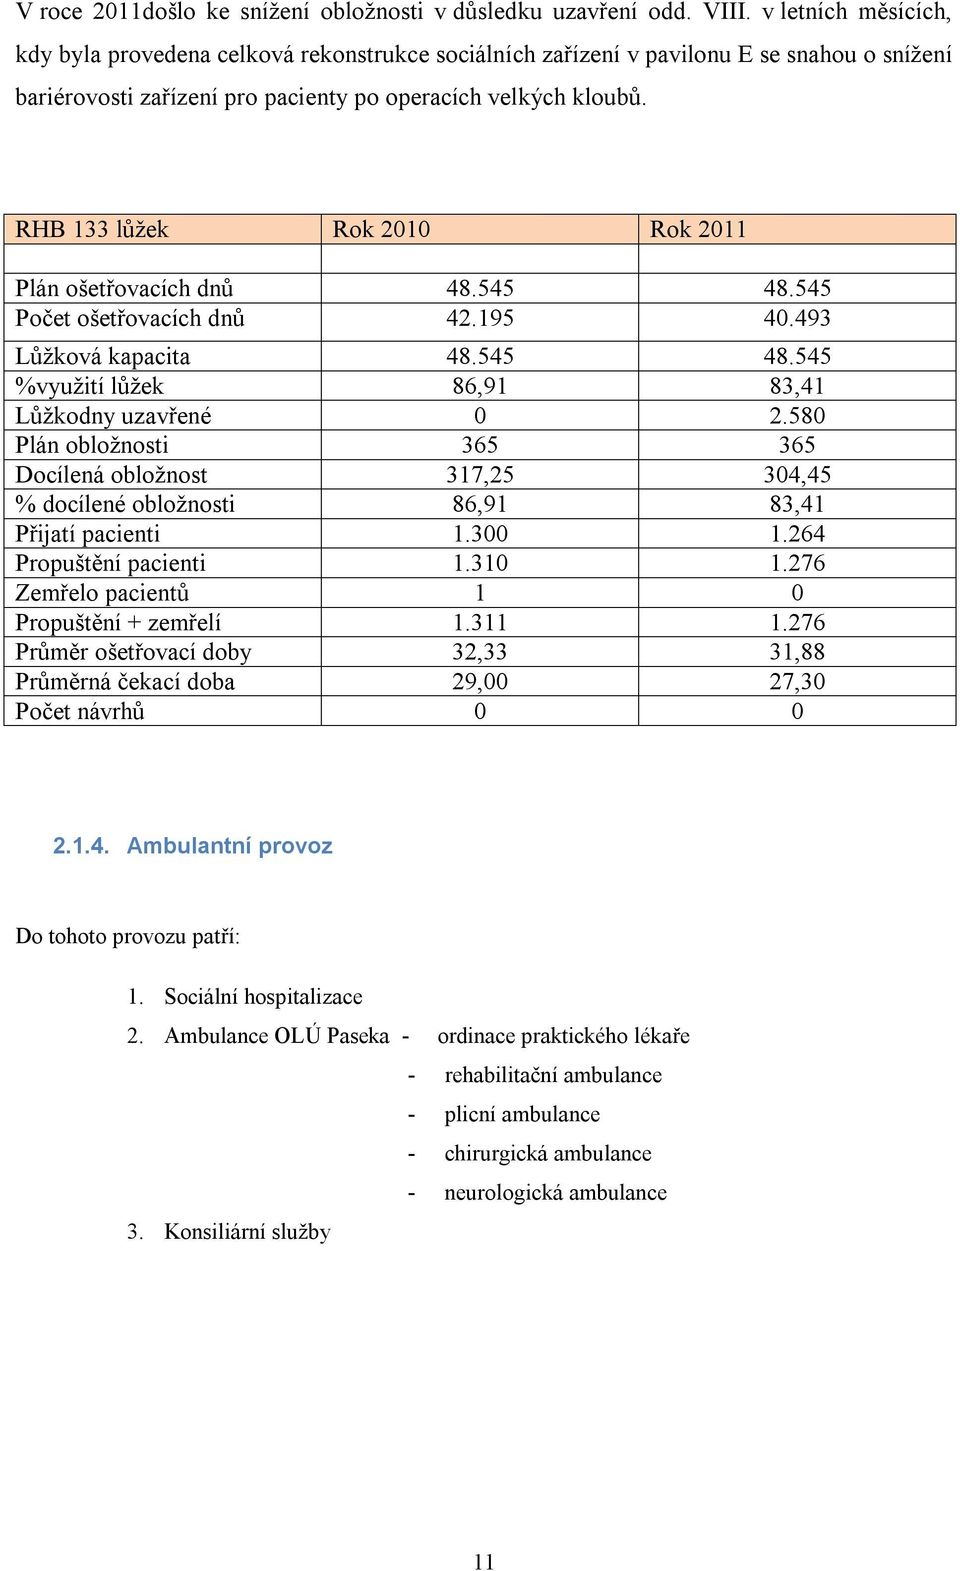 RHB 133 lůžek Rok 2010 Rok 2011 Plán ošetřovacích dnů 48.545 48.545 Počet ošetřovacích dnů 42.195 40.493 Lůžková kapacita 48.545 48.545 %využití lůžek 86,91 83,41 Lůžkodny uzavřené 0 2.